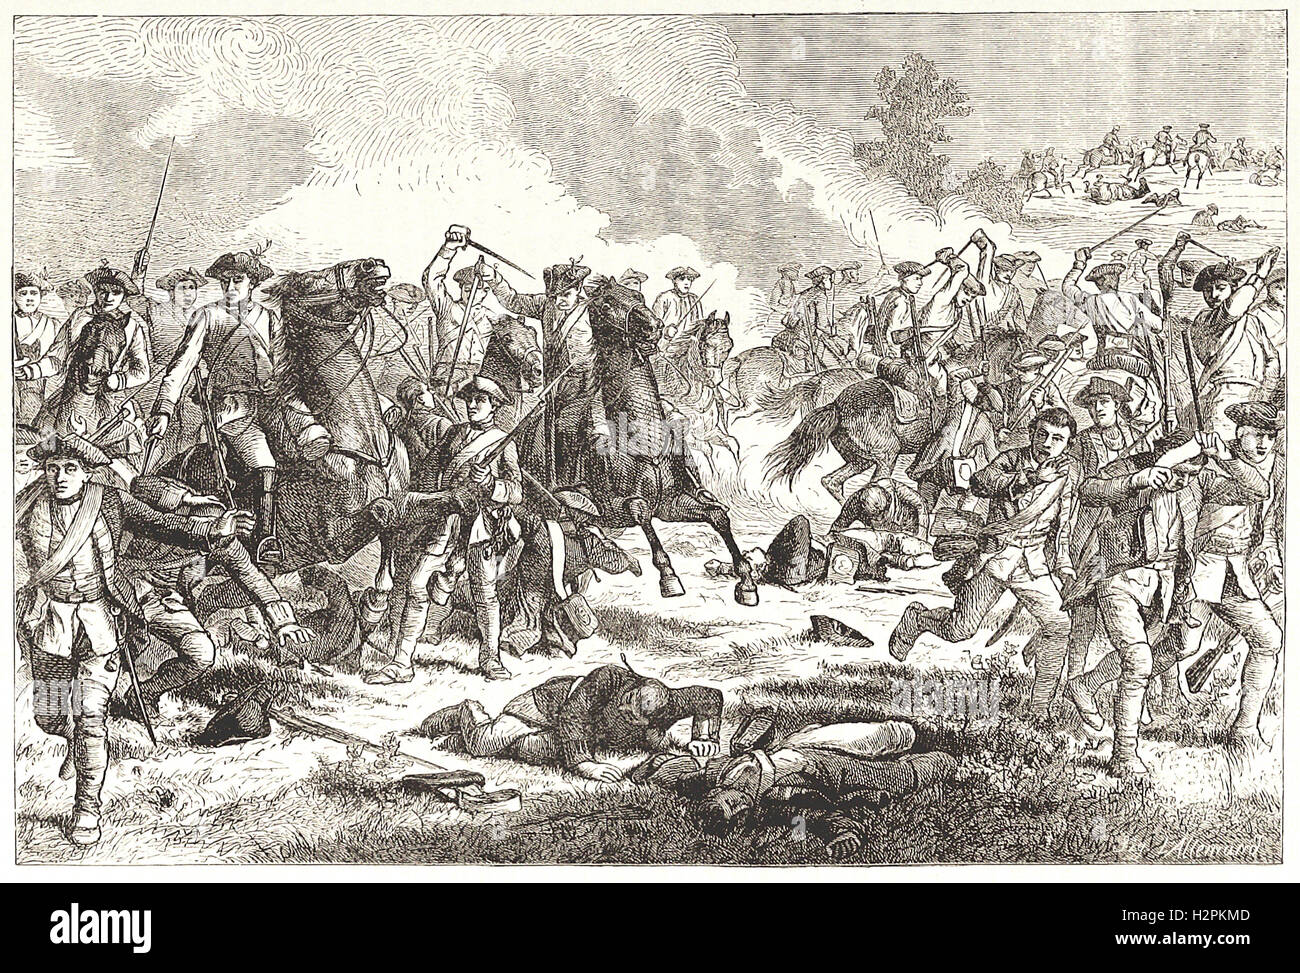 CHARGE de cavalerie du LOUDON À KUNERSDORF (l759) - de 'Cassell's Illustrated Histoire universelle" - 1882 Banque D'Images